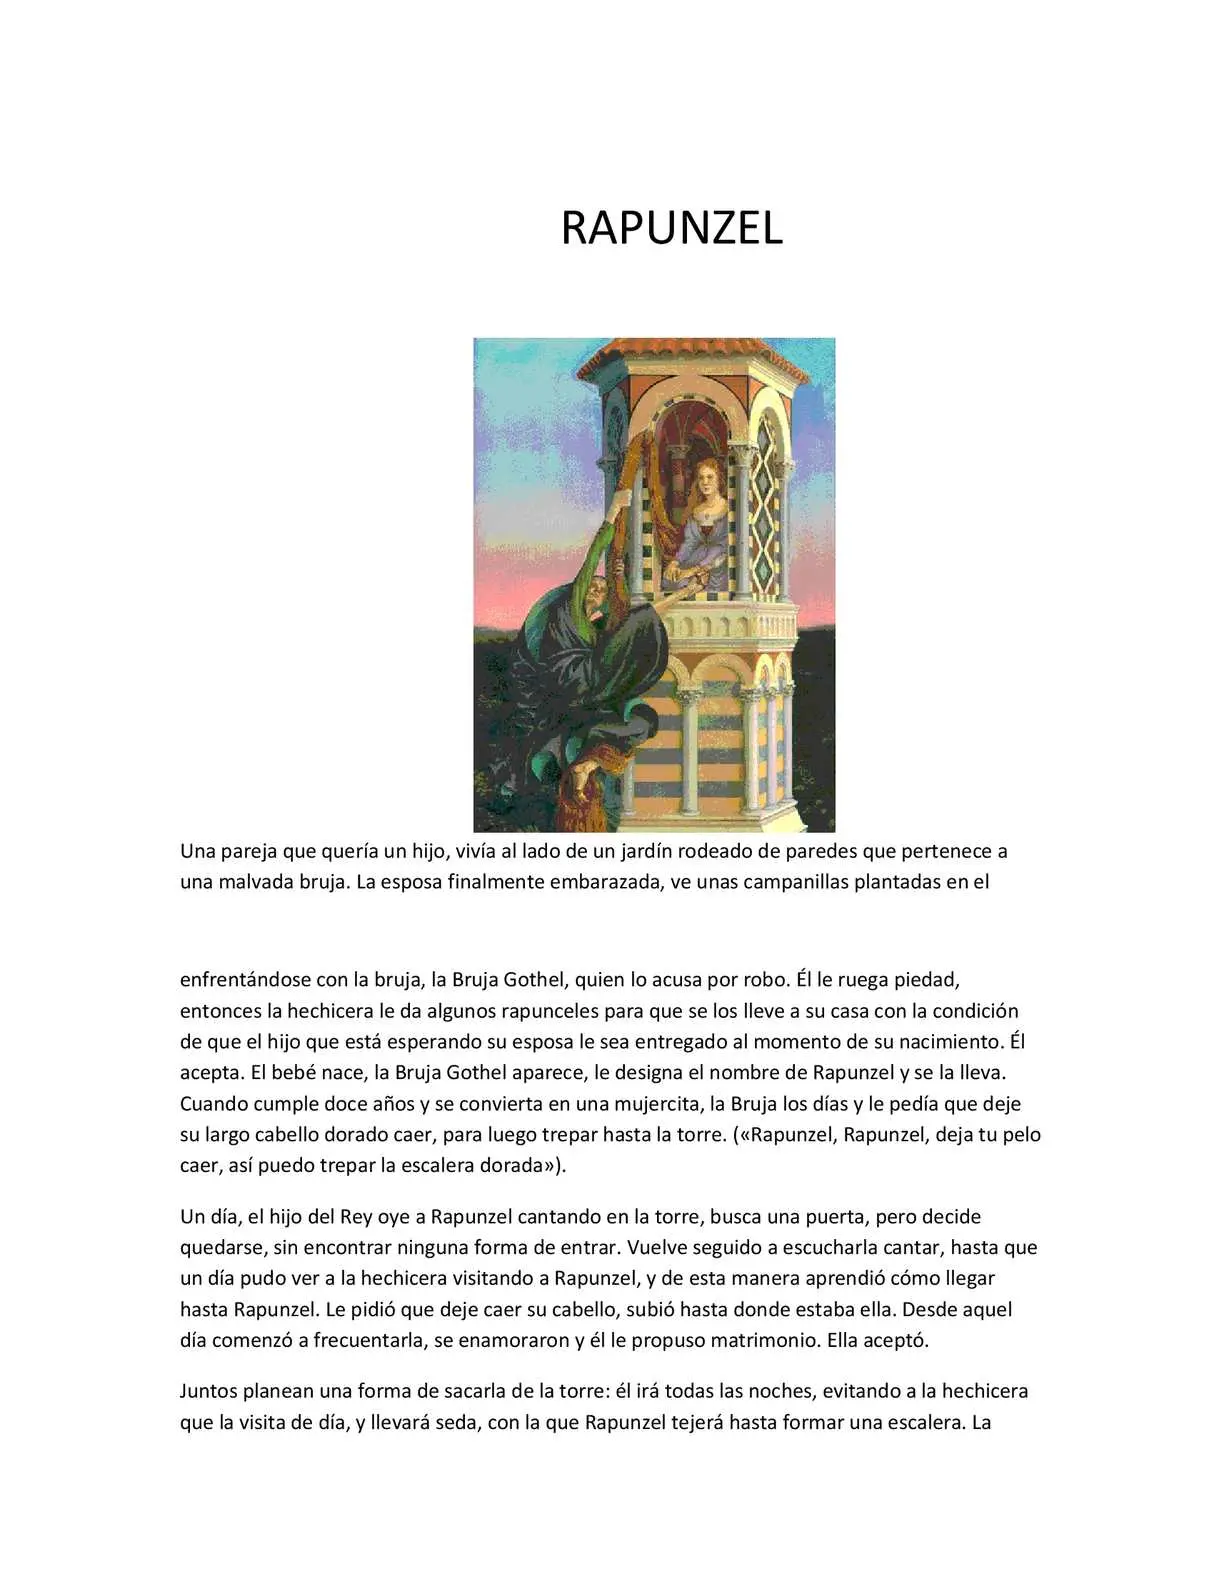 resumen de rapunzel - Qué se trata el cuento de Rapunzel